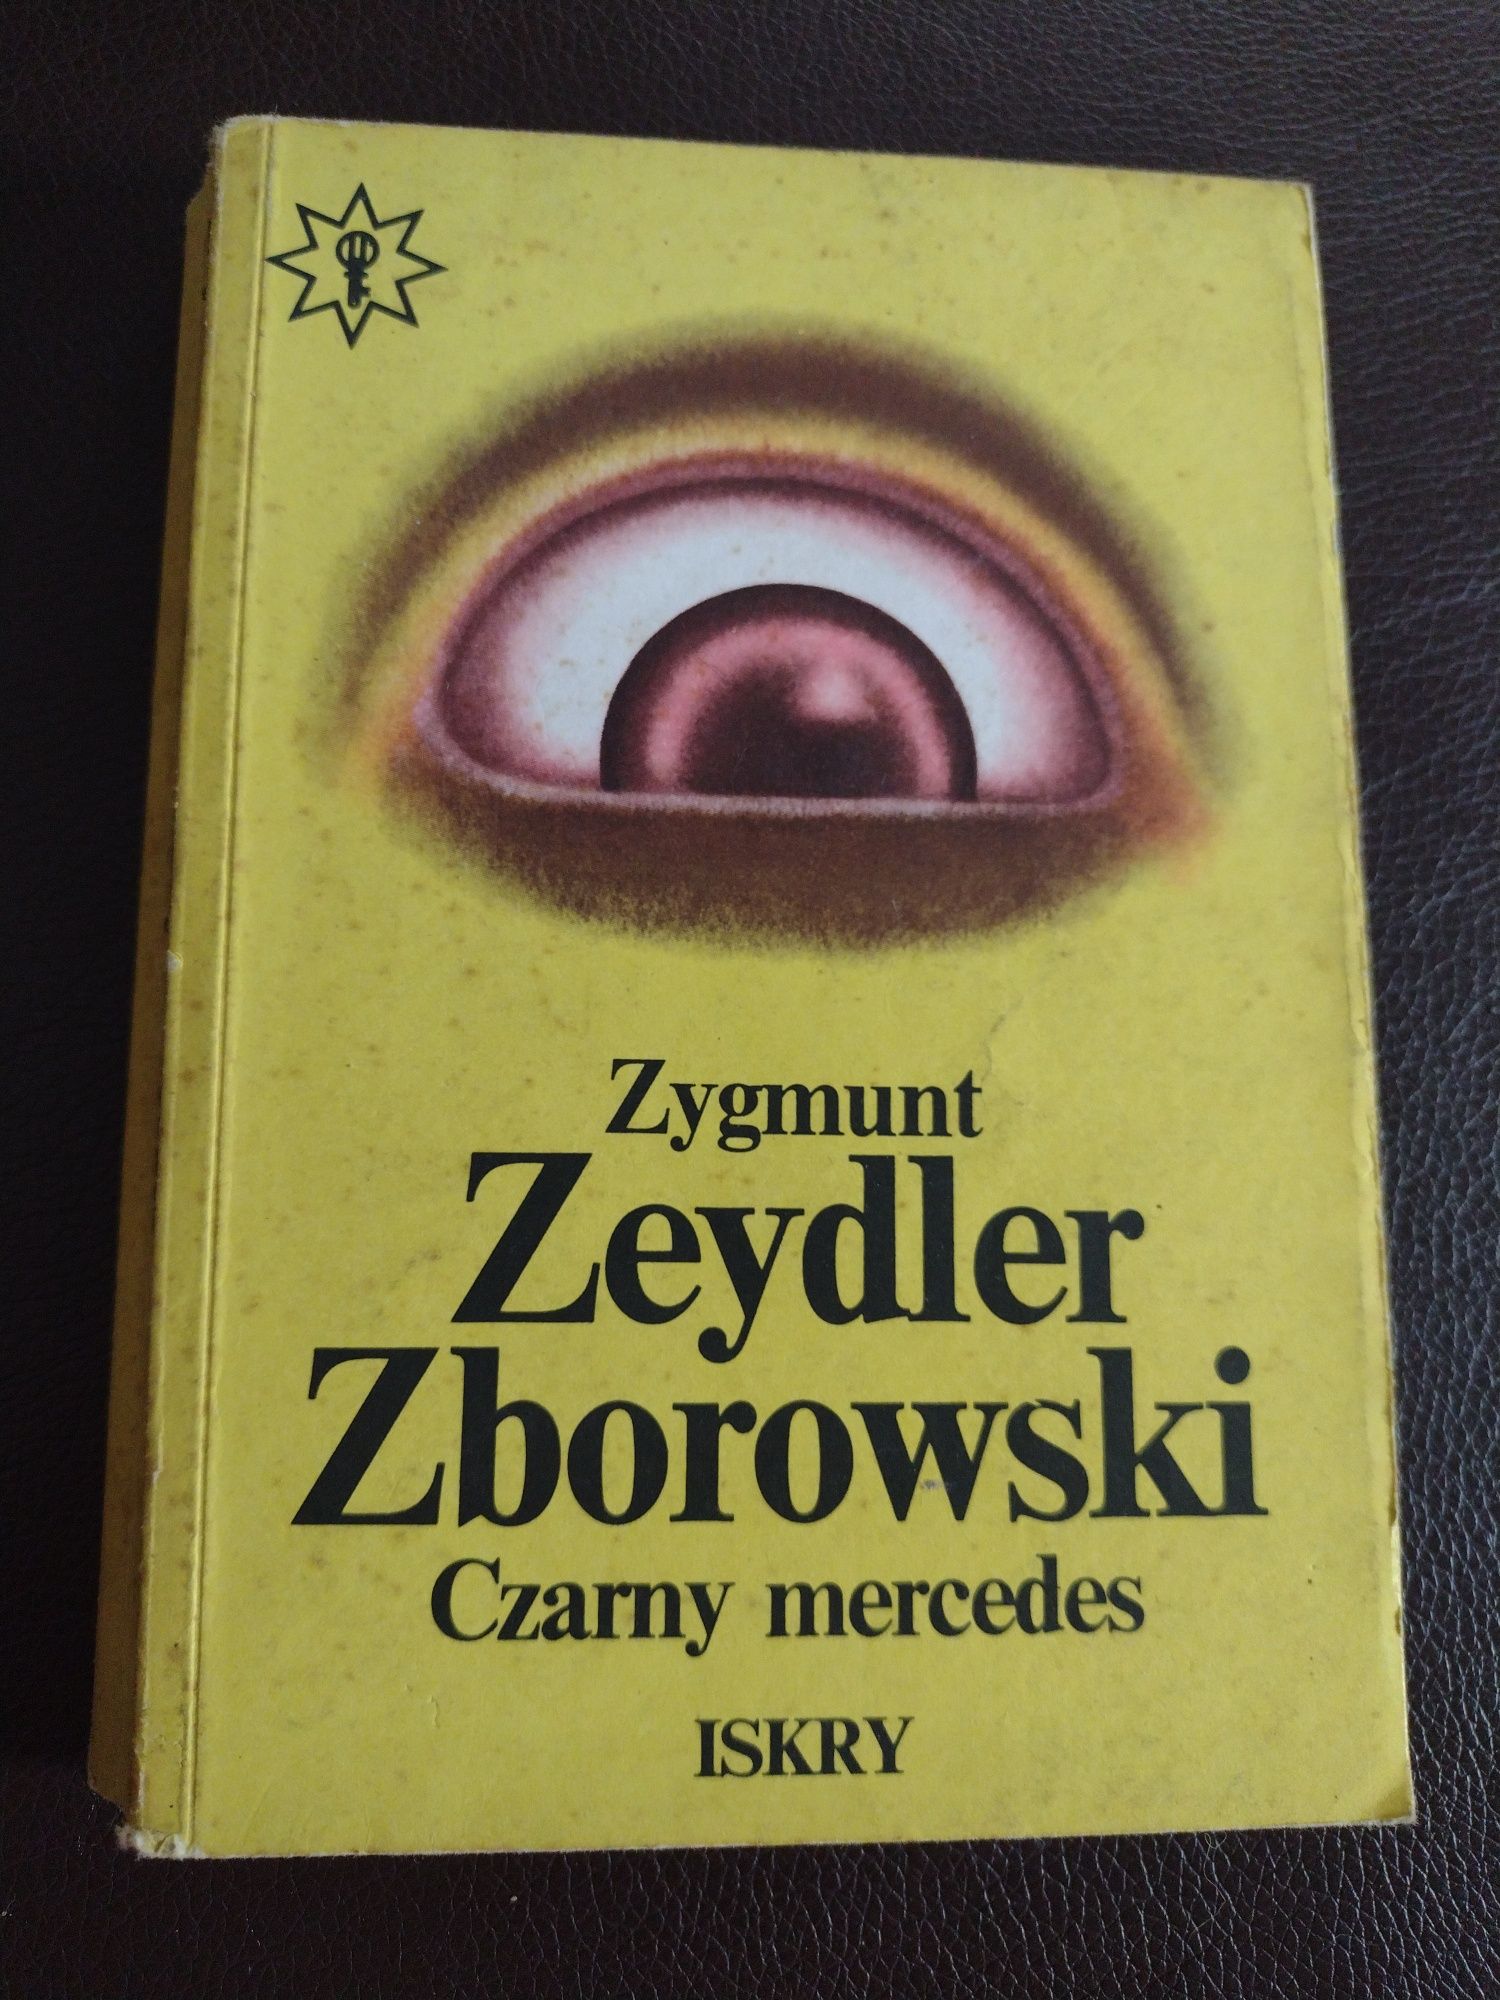 Zygmunt Zeydler Zborowski Czarny mercedes